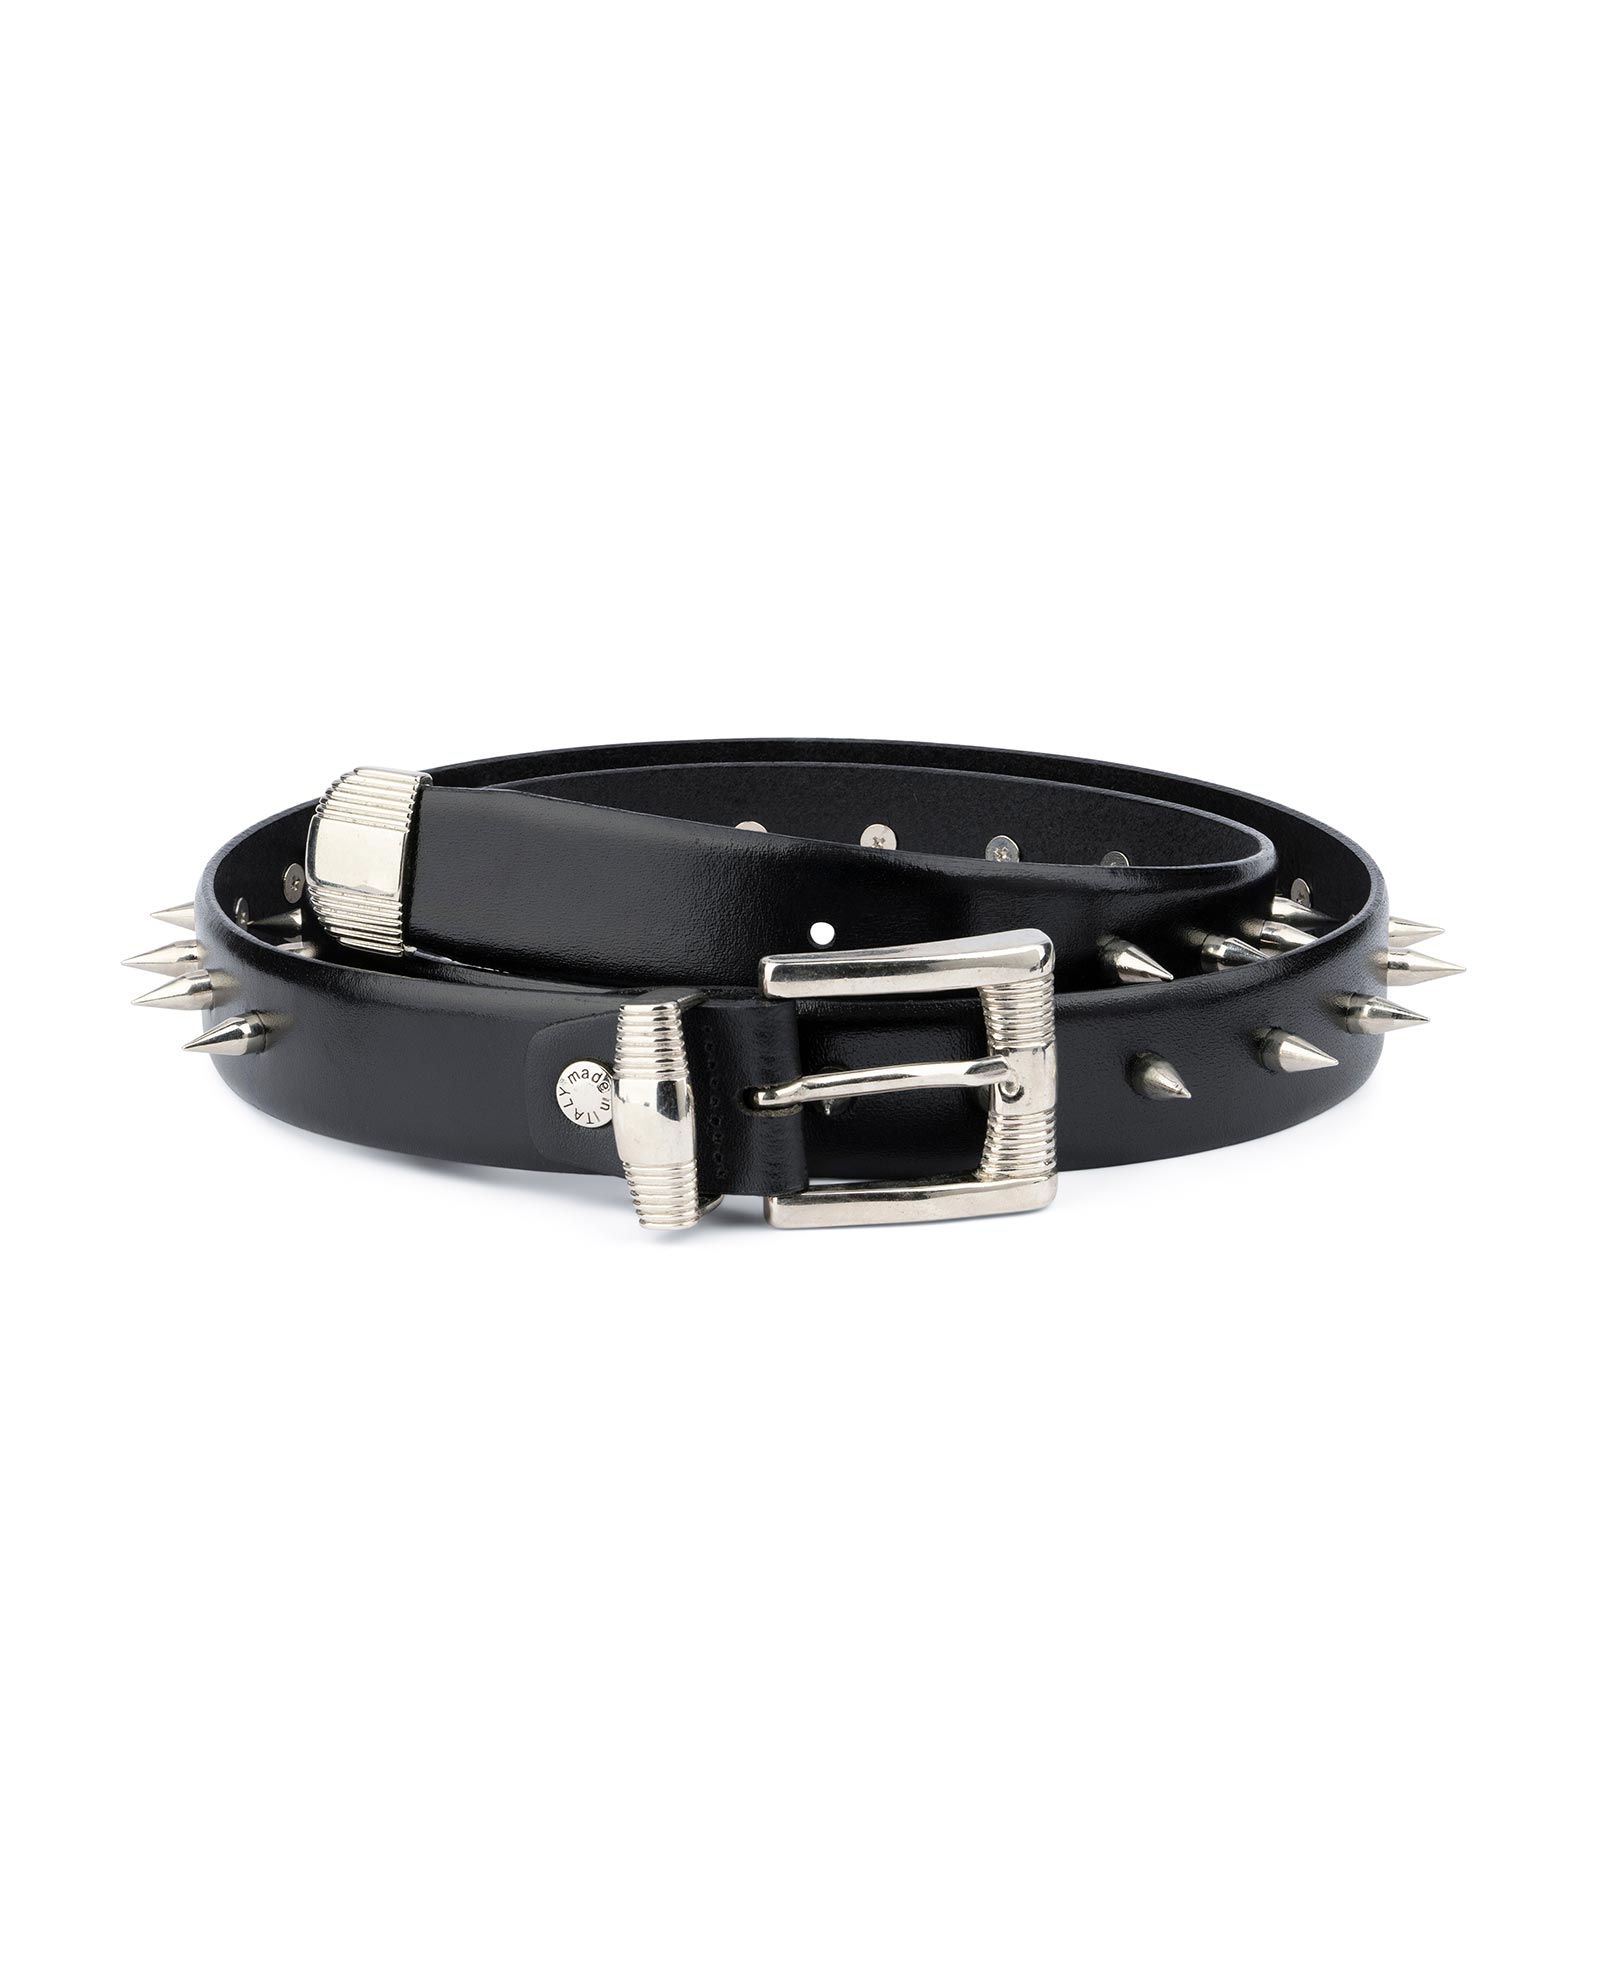 Buy Mens Spiked Belt in Black Leather - LeatherBeltsOnline.com